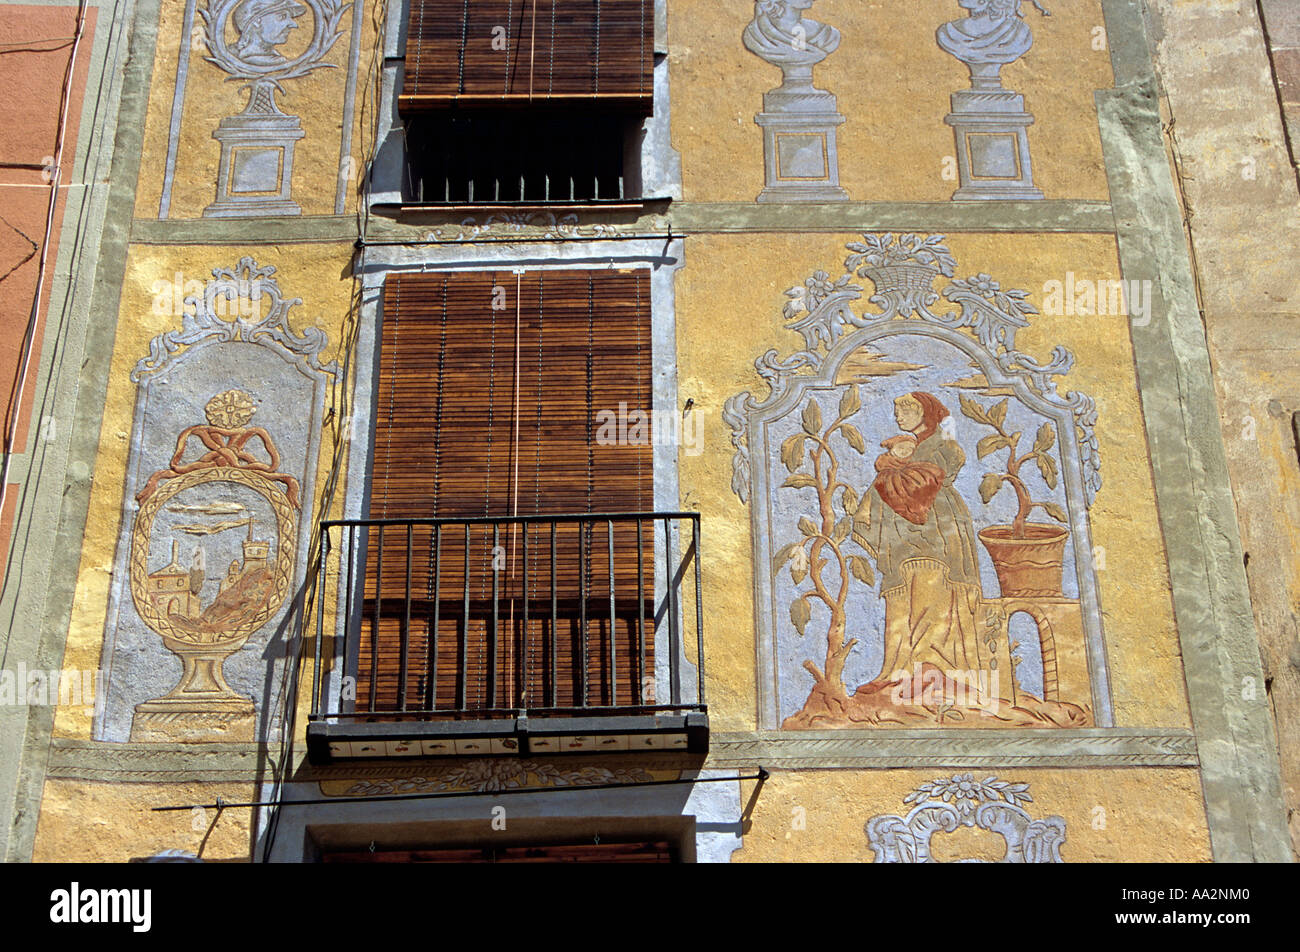 Pitture Murali e balconi, Placa de Jaume Sabartes, Barcellona, Spagna Foto Stock